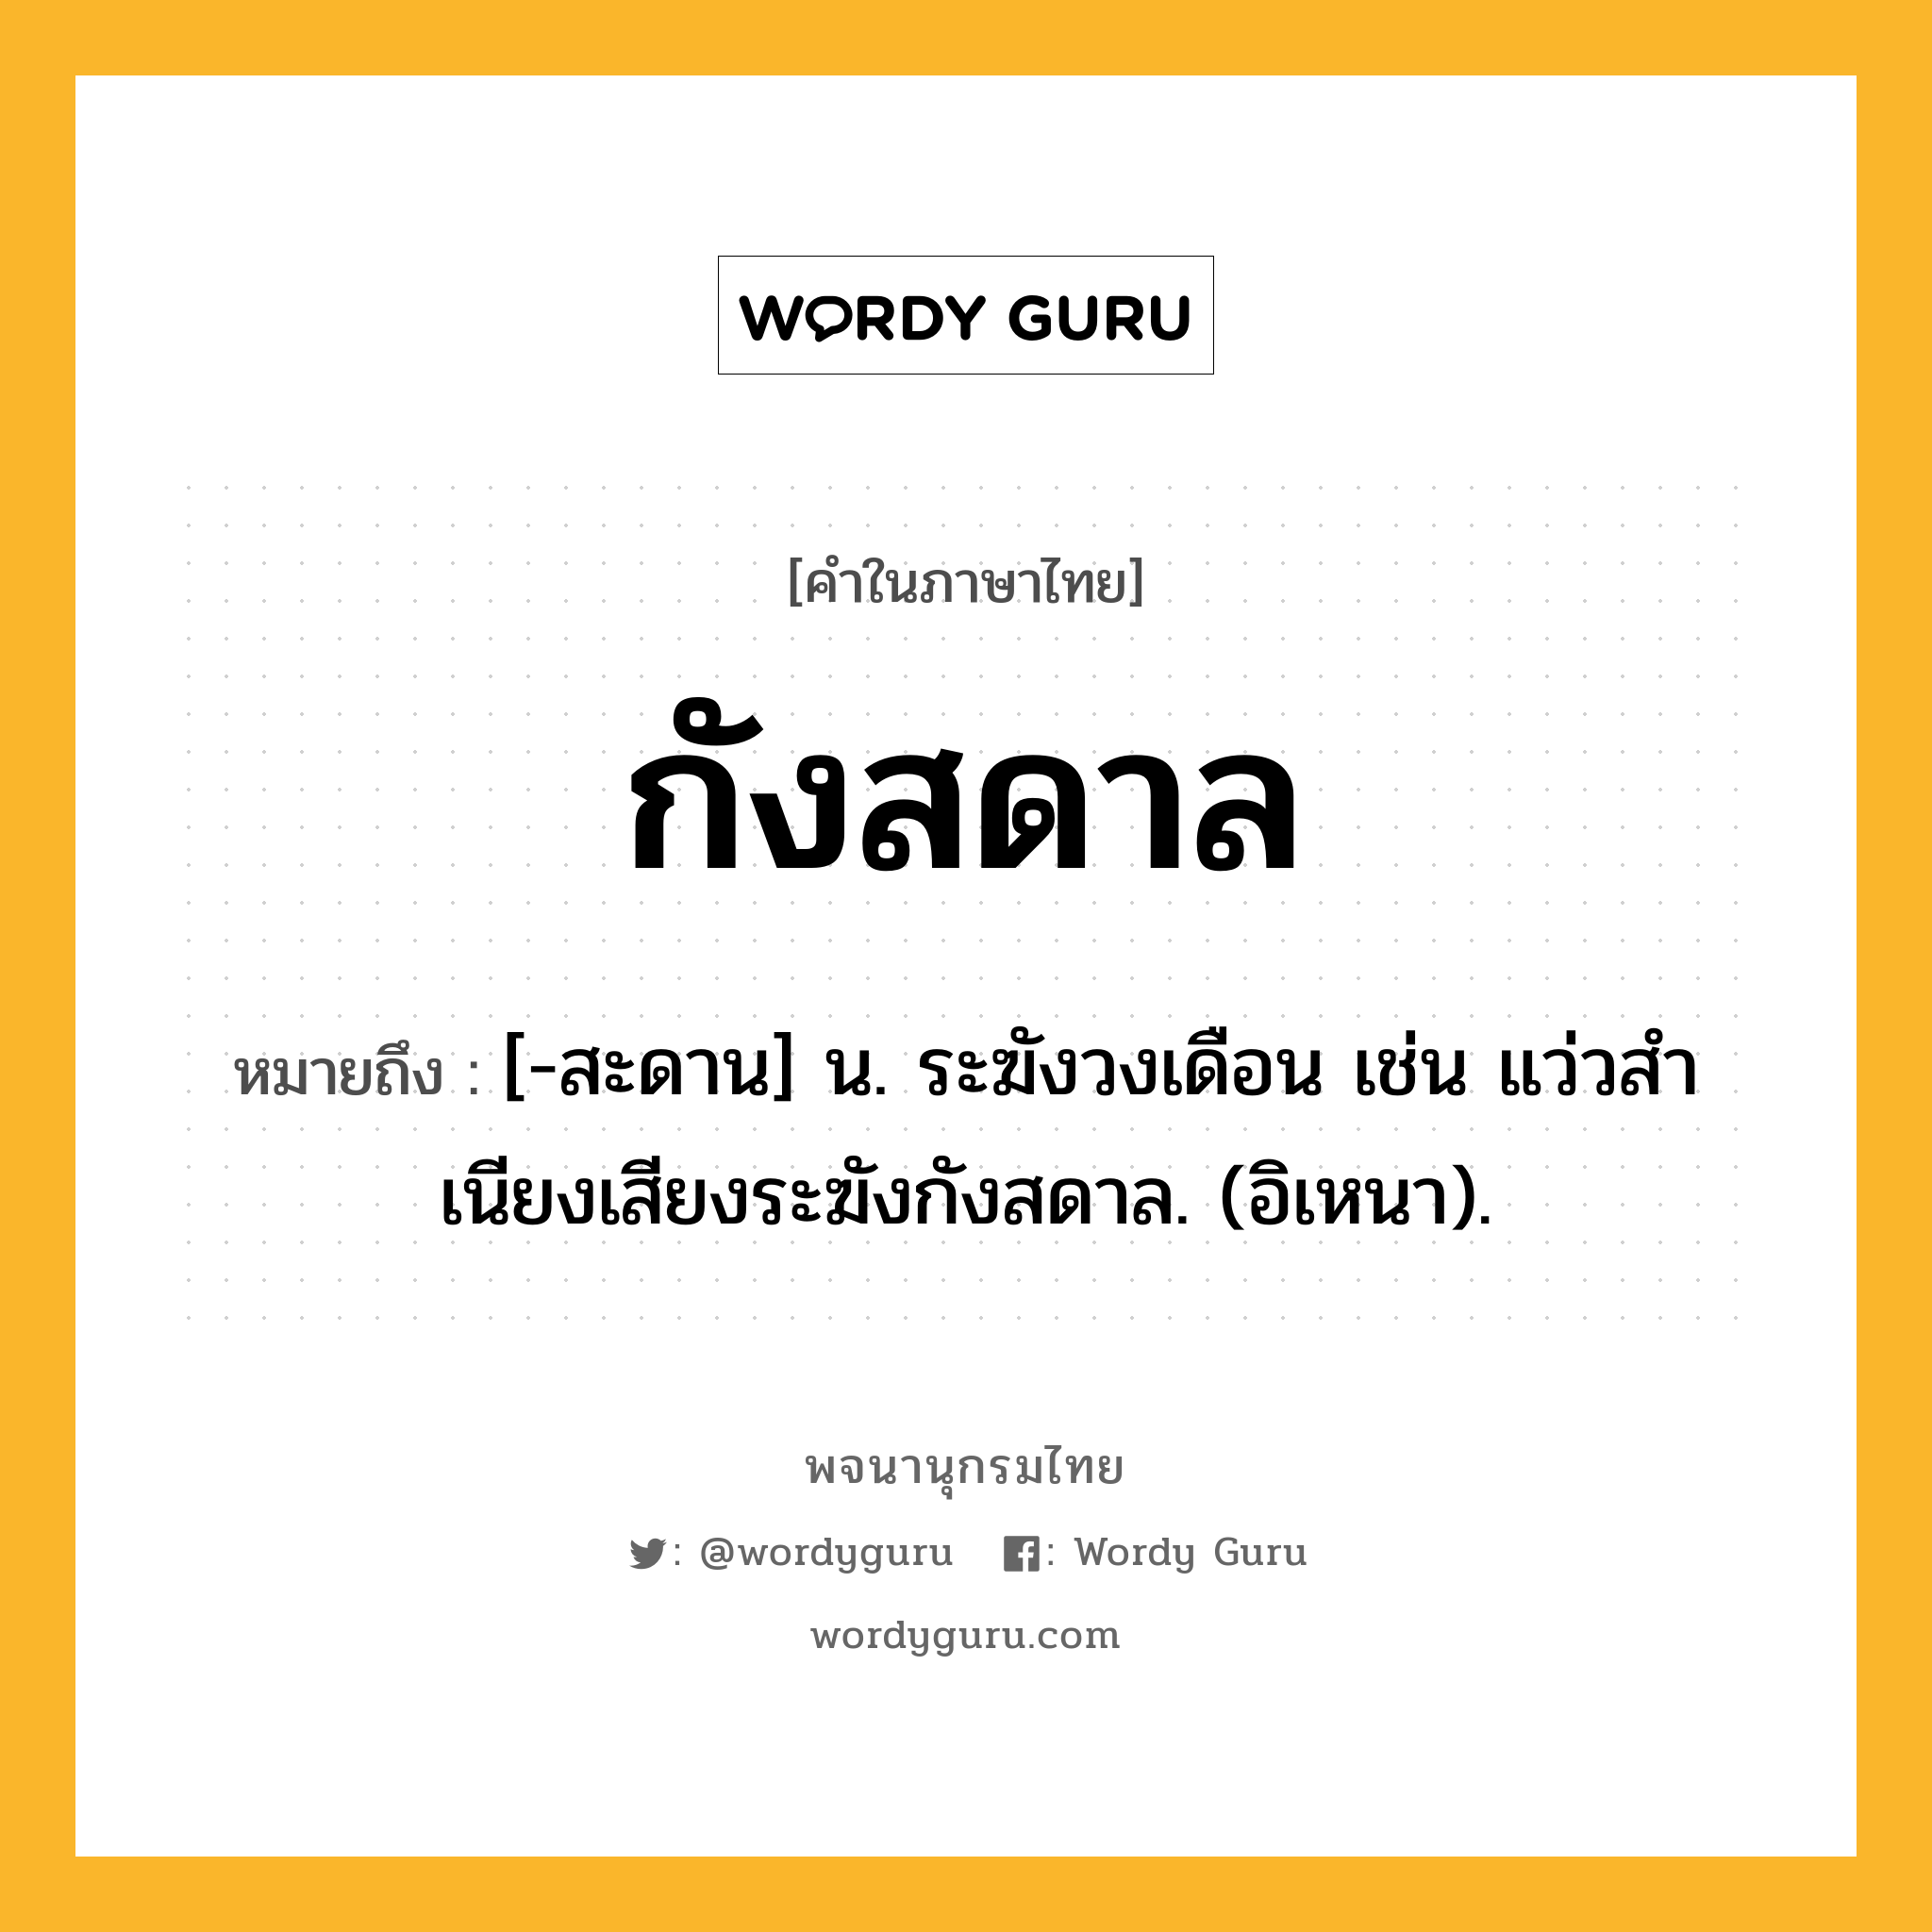 กังสดาล หมายถึงอะไร?, คำในภาษาไทย กังสดาล หมายถึง [-สะดาน] น. ระฆังวงเดือน เช่น แว่วสําเนียงเสียงระฆังกังสดาล. (อิเหนา).